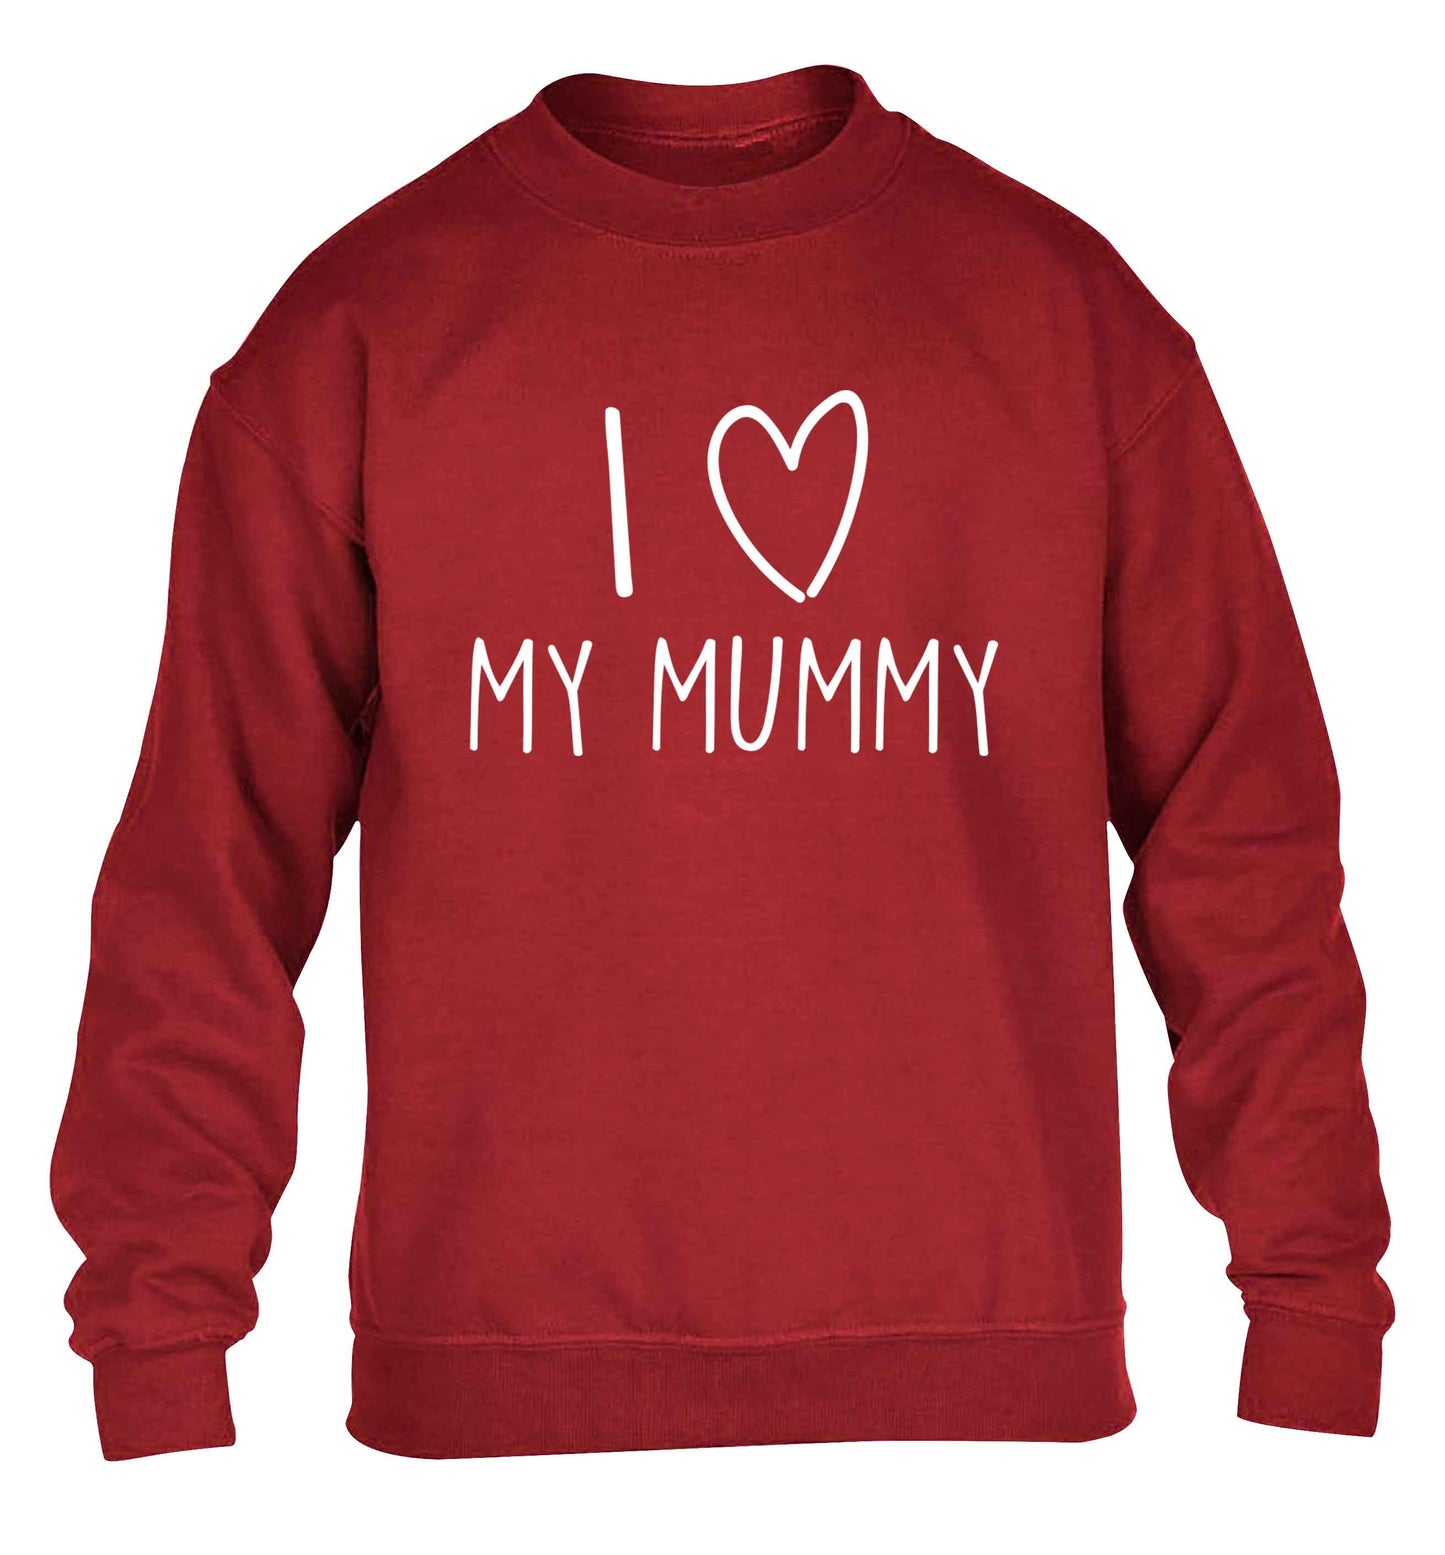 I love my mummy children's grey sweater 12-13 Years